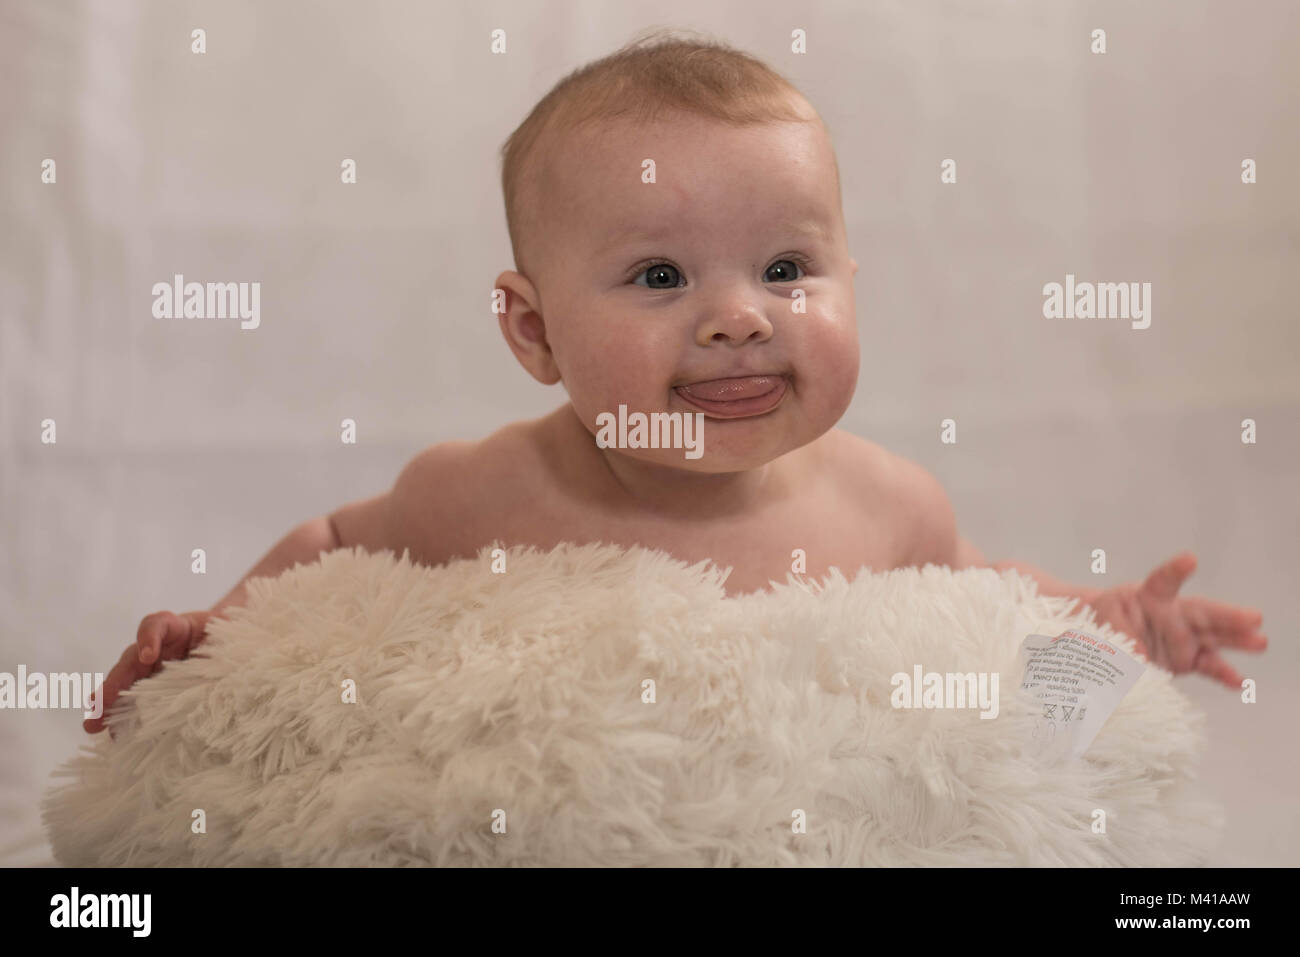 cute baby with white pom pom hat on sheepskin rug Stock Photo